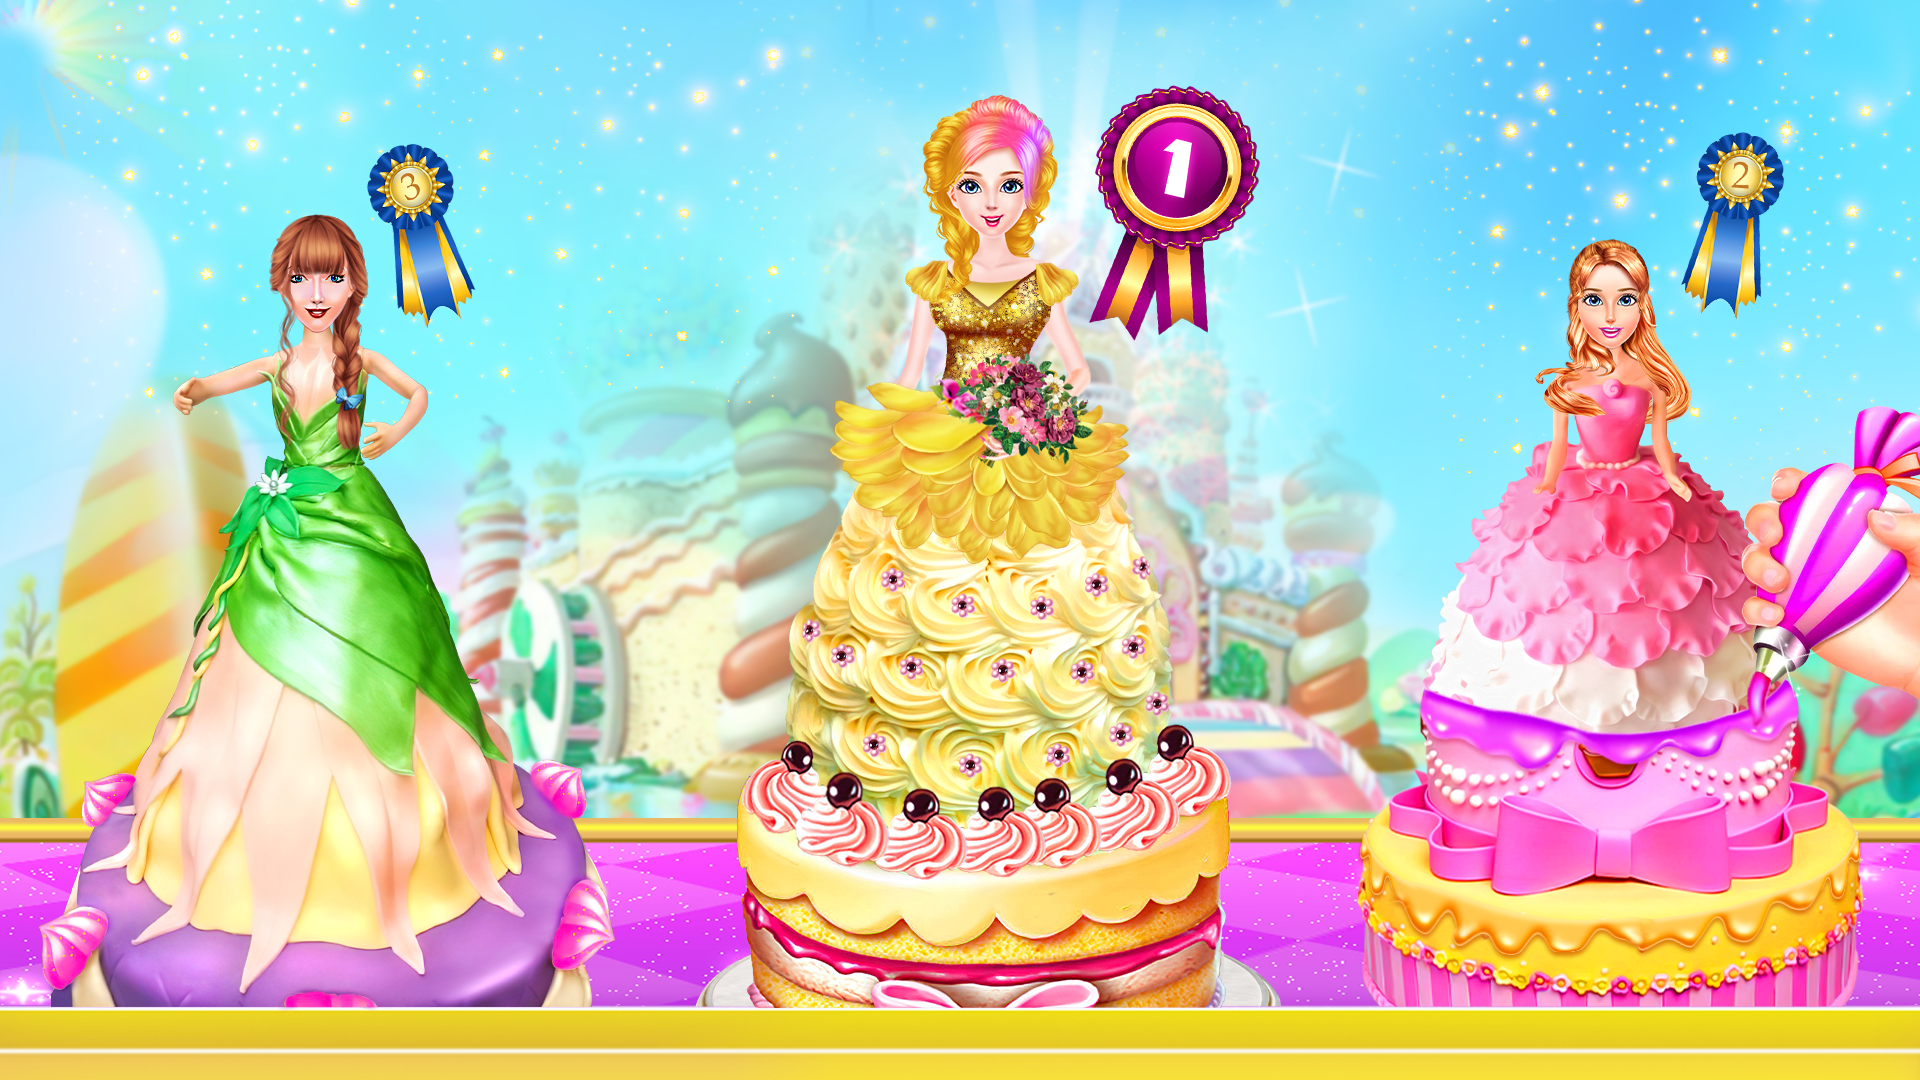 Mermaid Girl Wedding Cooking Cake Game - free online game